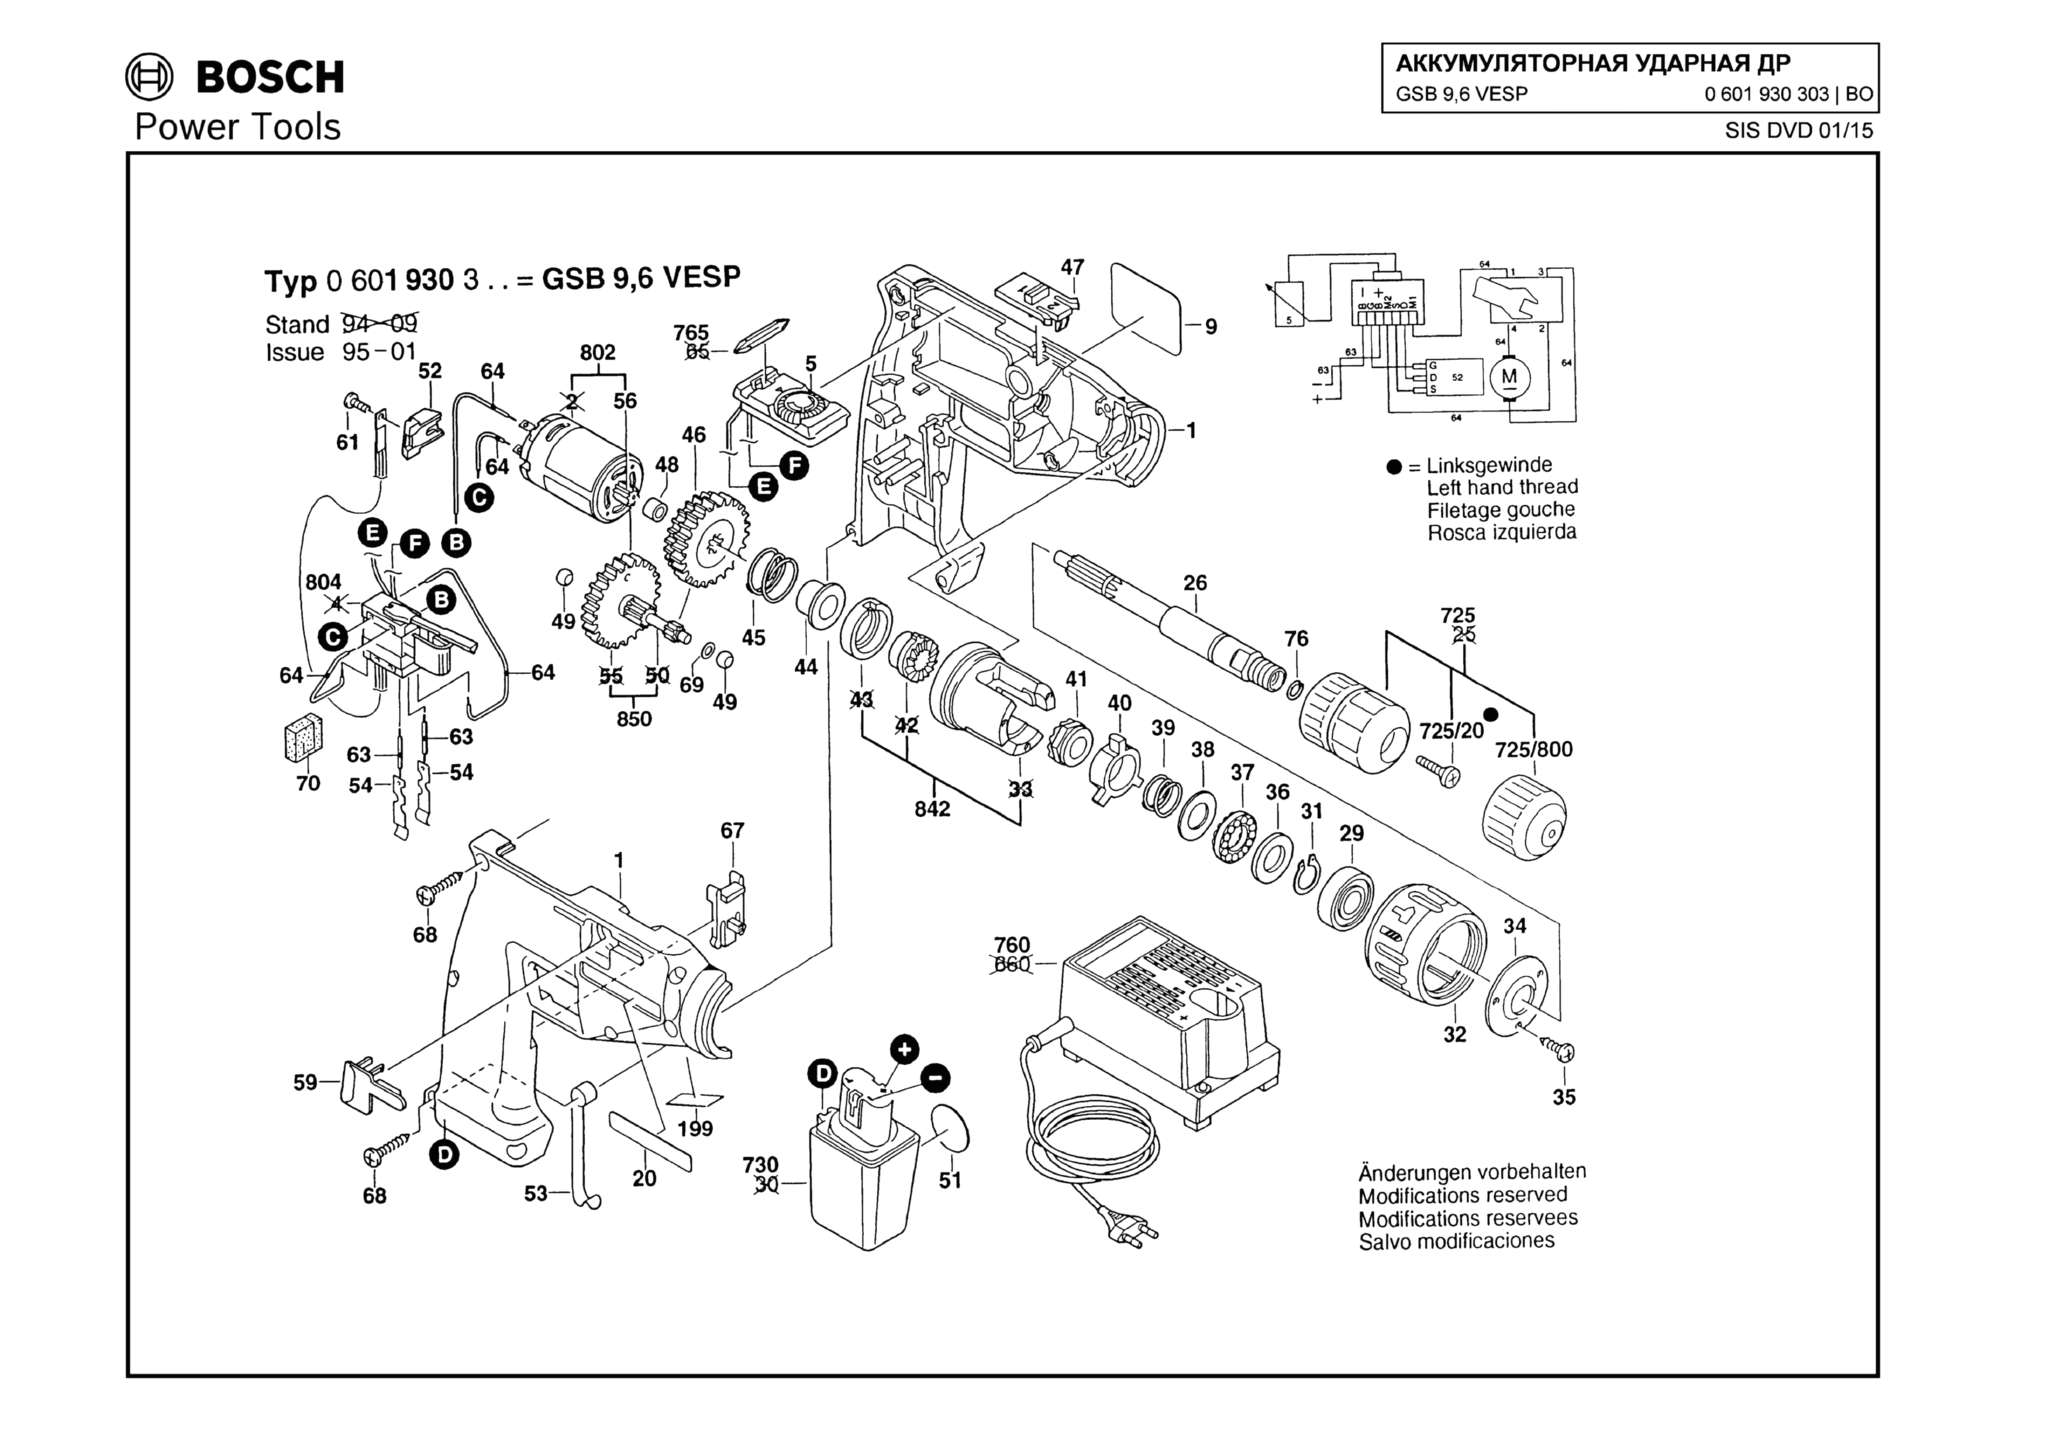 Запчасти, схема и деталировка Bosch GSB 9,6 VESP (ТИП 0601930303)